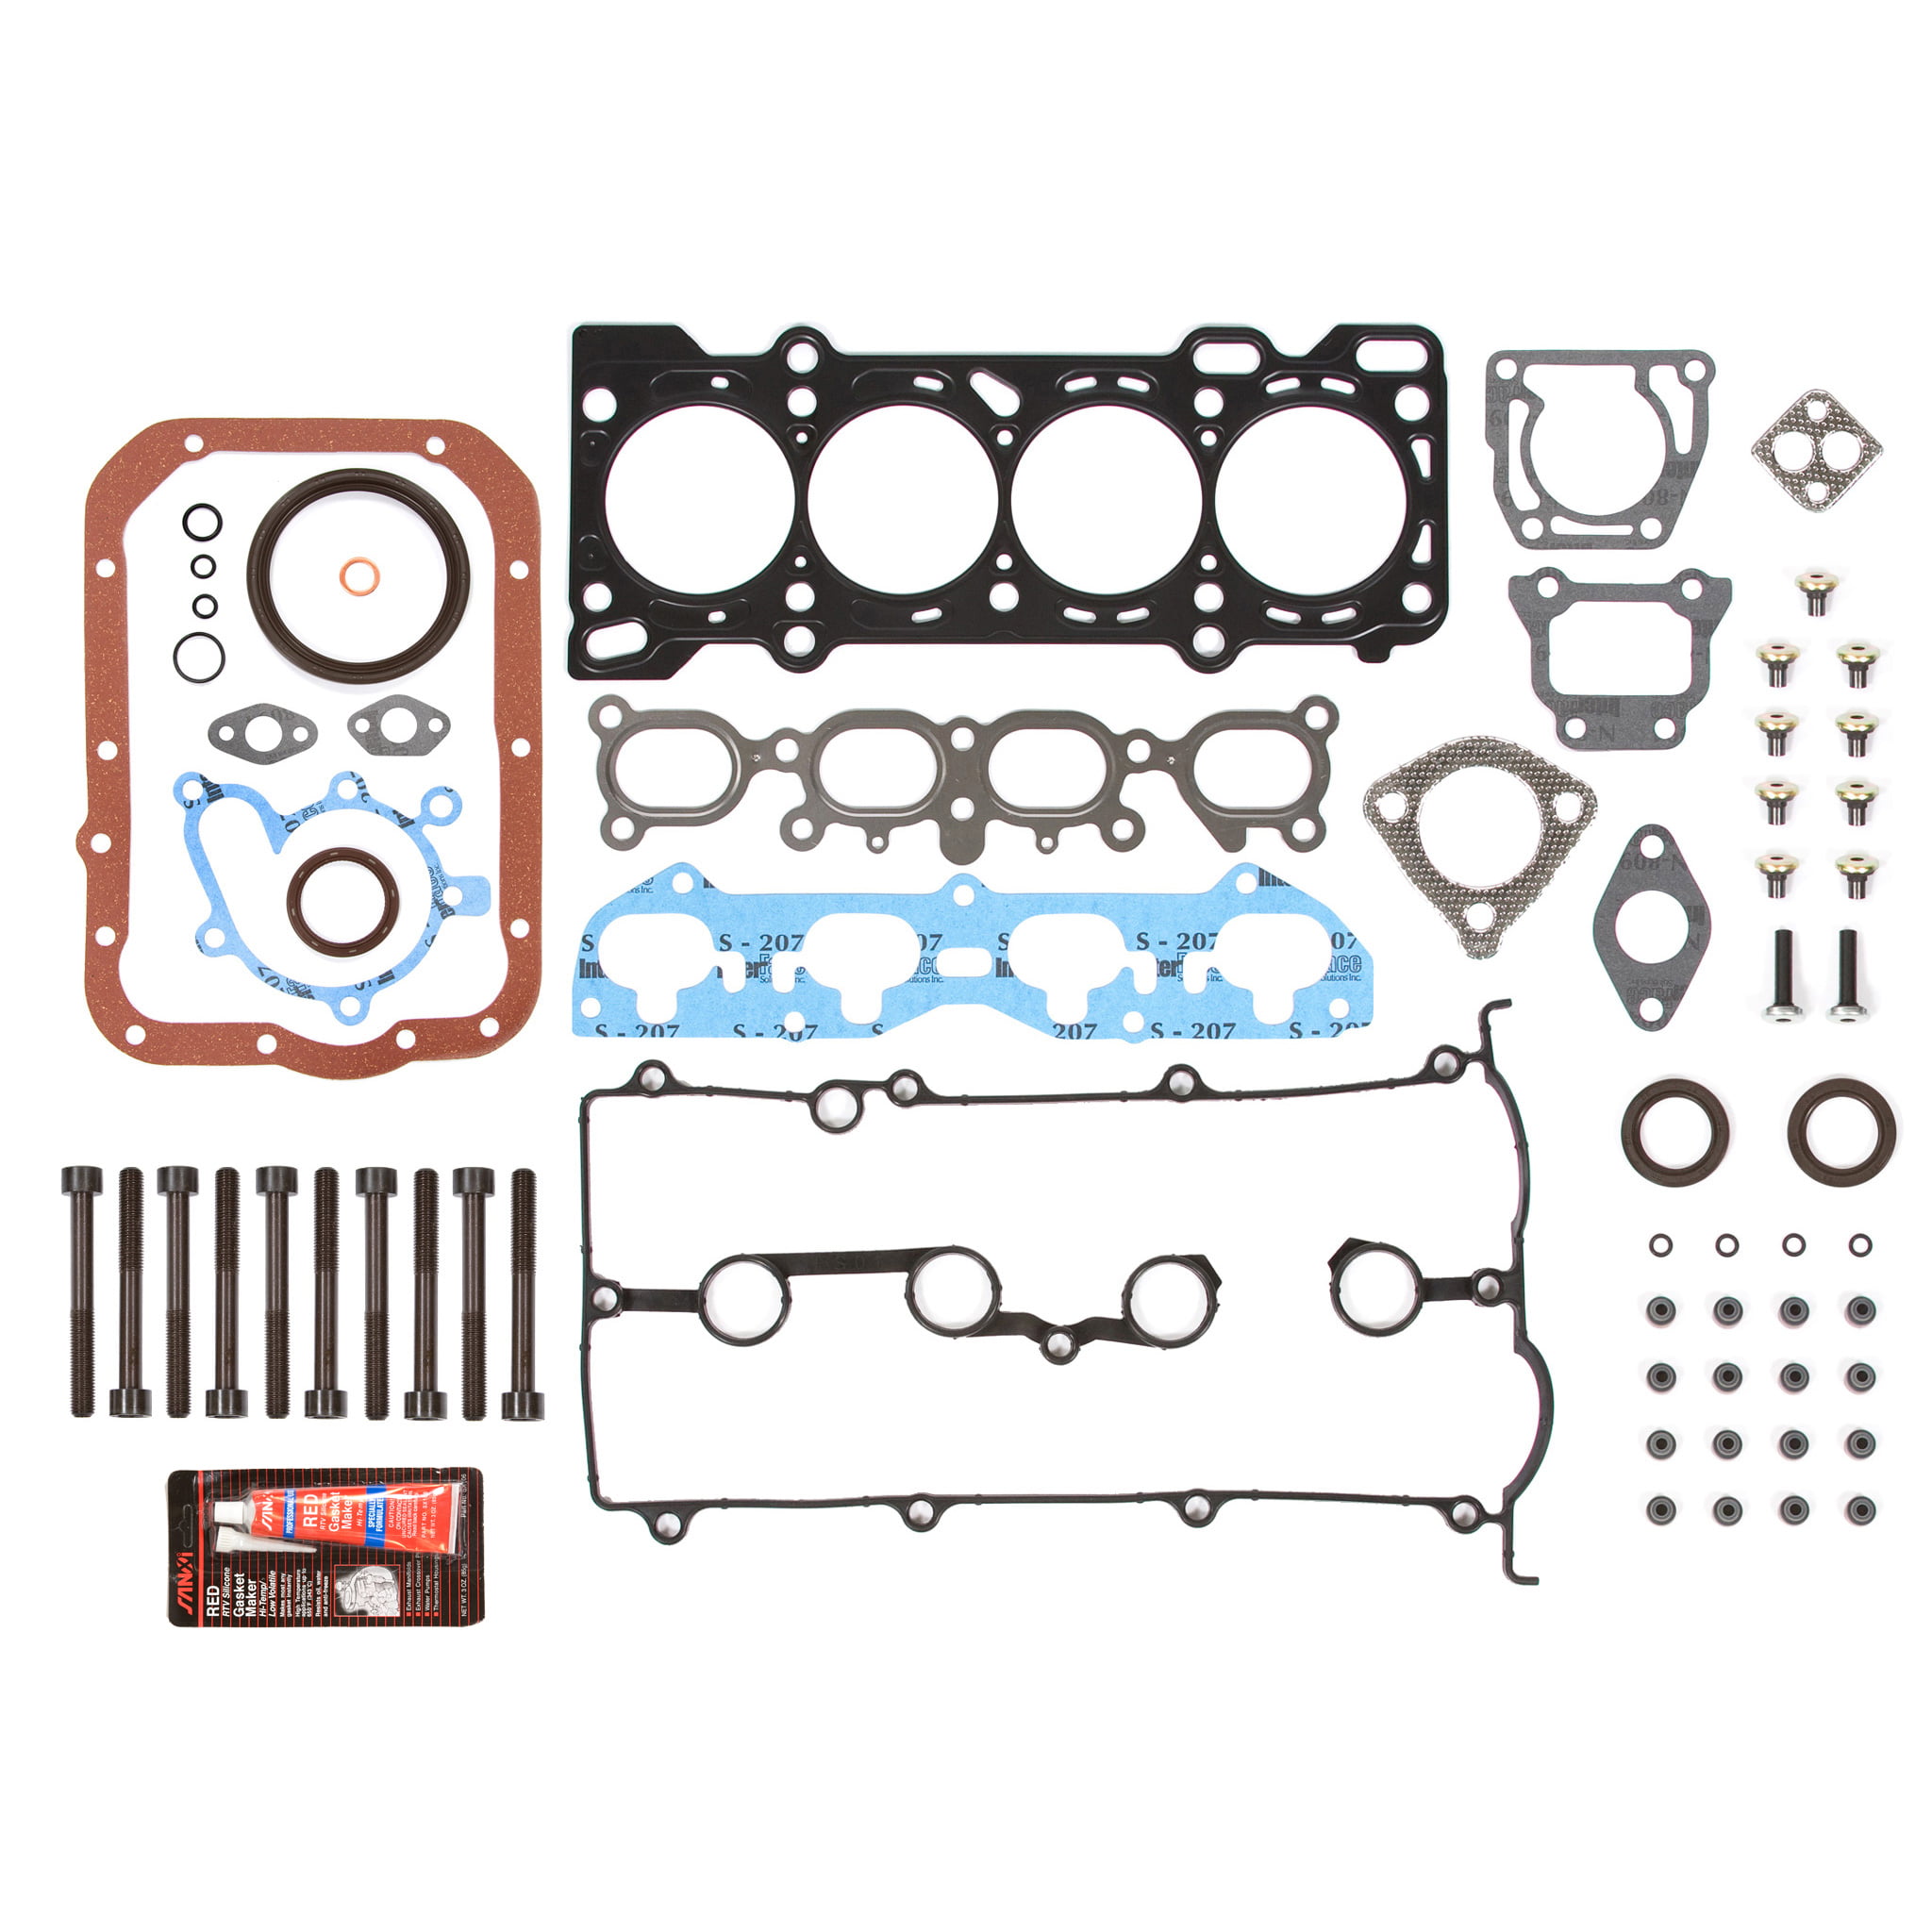 Head Gasket Set Bolt Kit Fits 00-03 Mazda 626 Protege 2.0L DOHC 16v FS